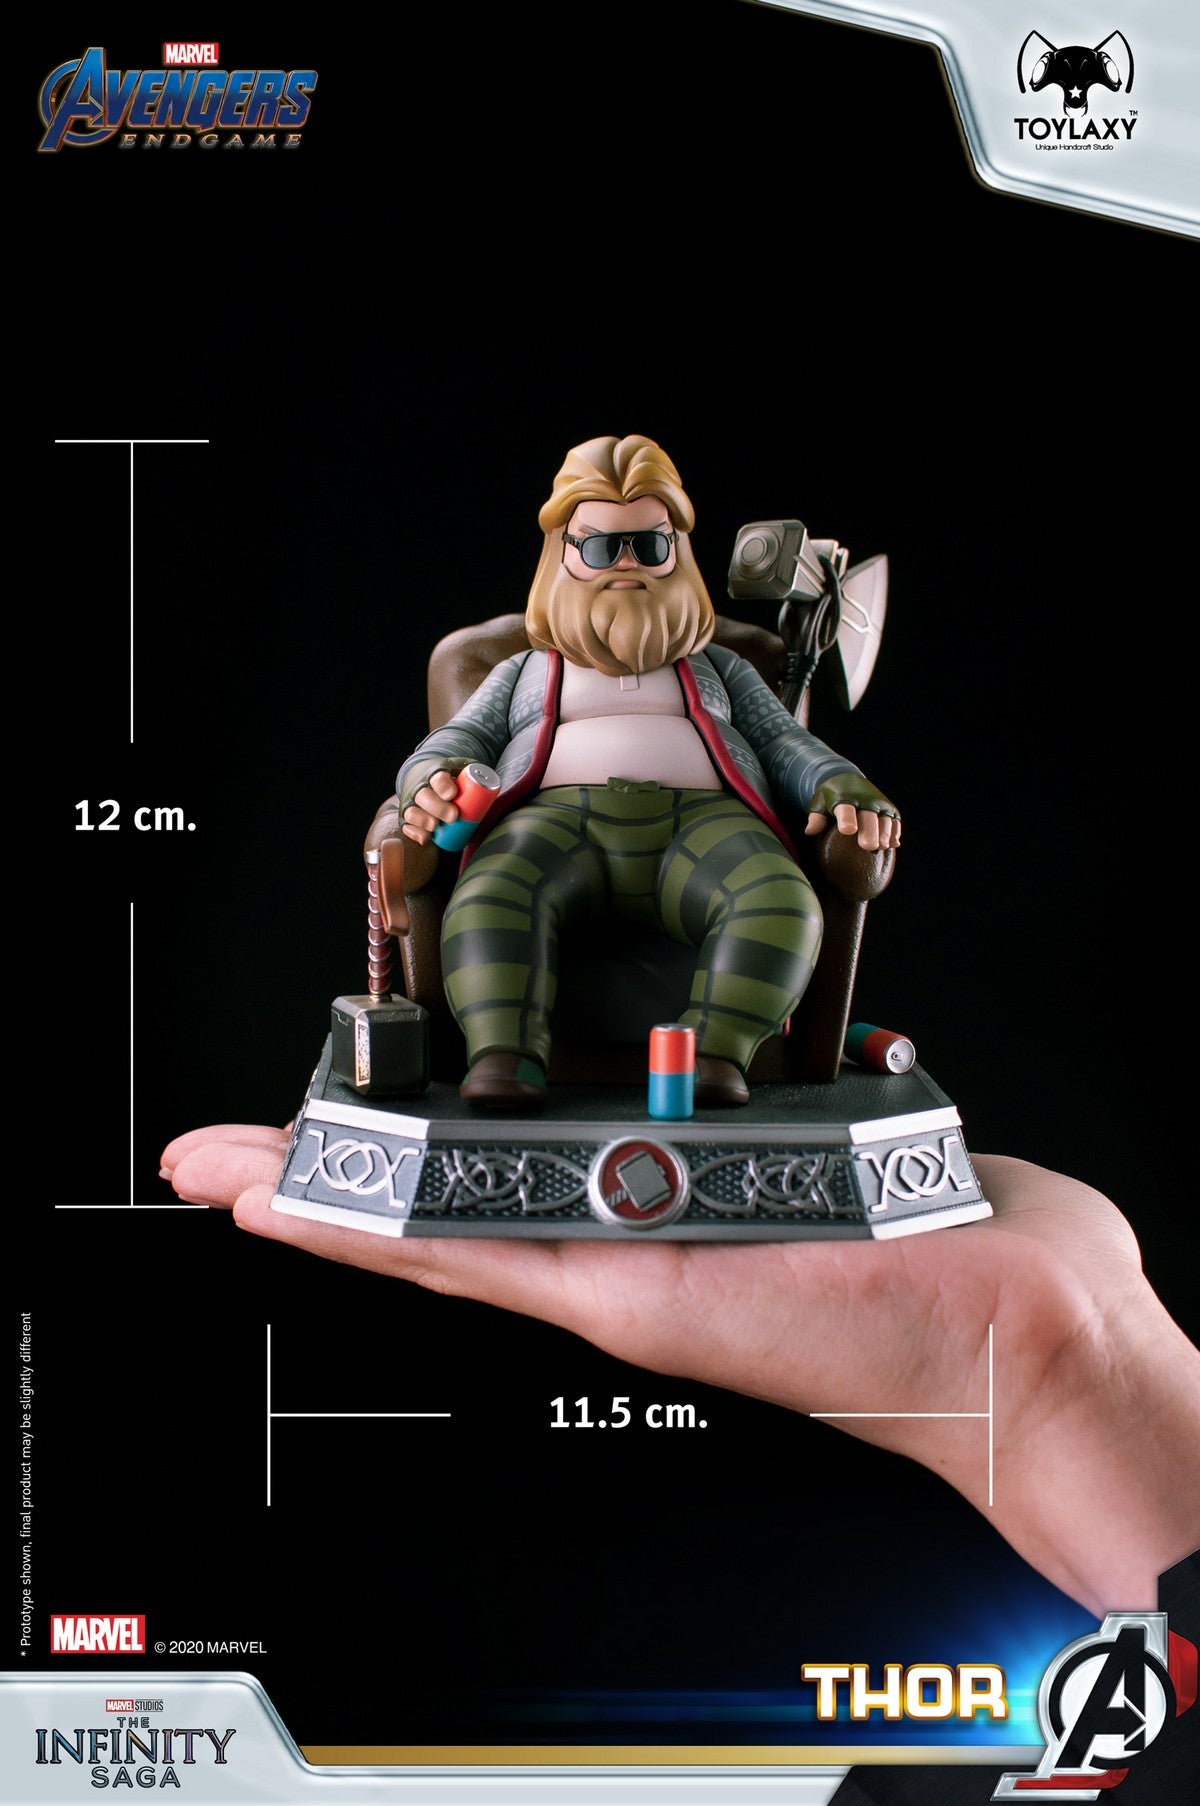 漫威復仇者聯盟：雷神索爾--胖索爾特別版正版模型手辦人偶玩具終局之戰版 Marvel's Avengers: Bro Thor Official Figure Toy size